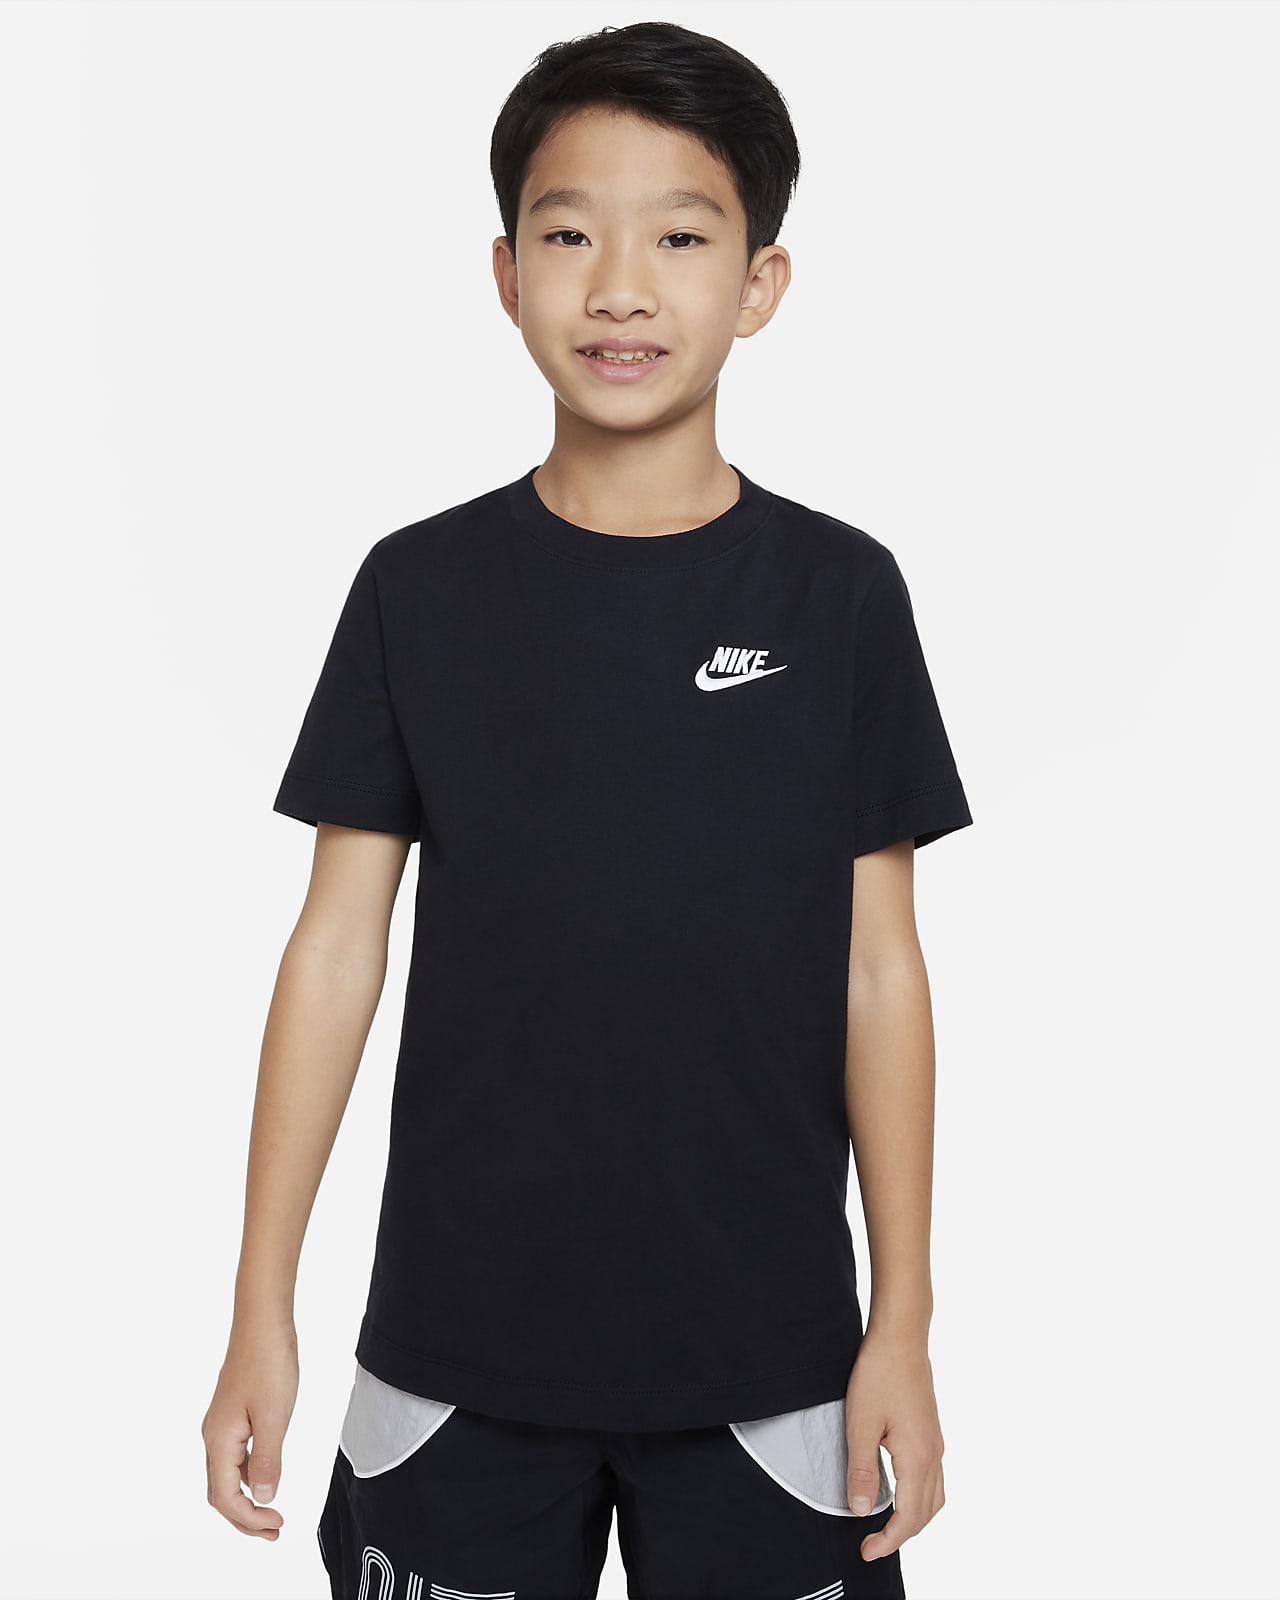 NIKE ナイキ スポーツTシャツ Mサイズ10-12歳 - ウェア